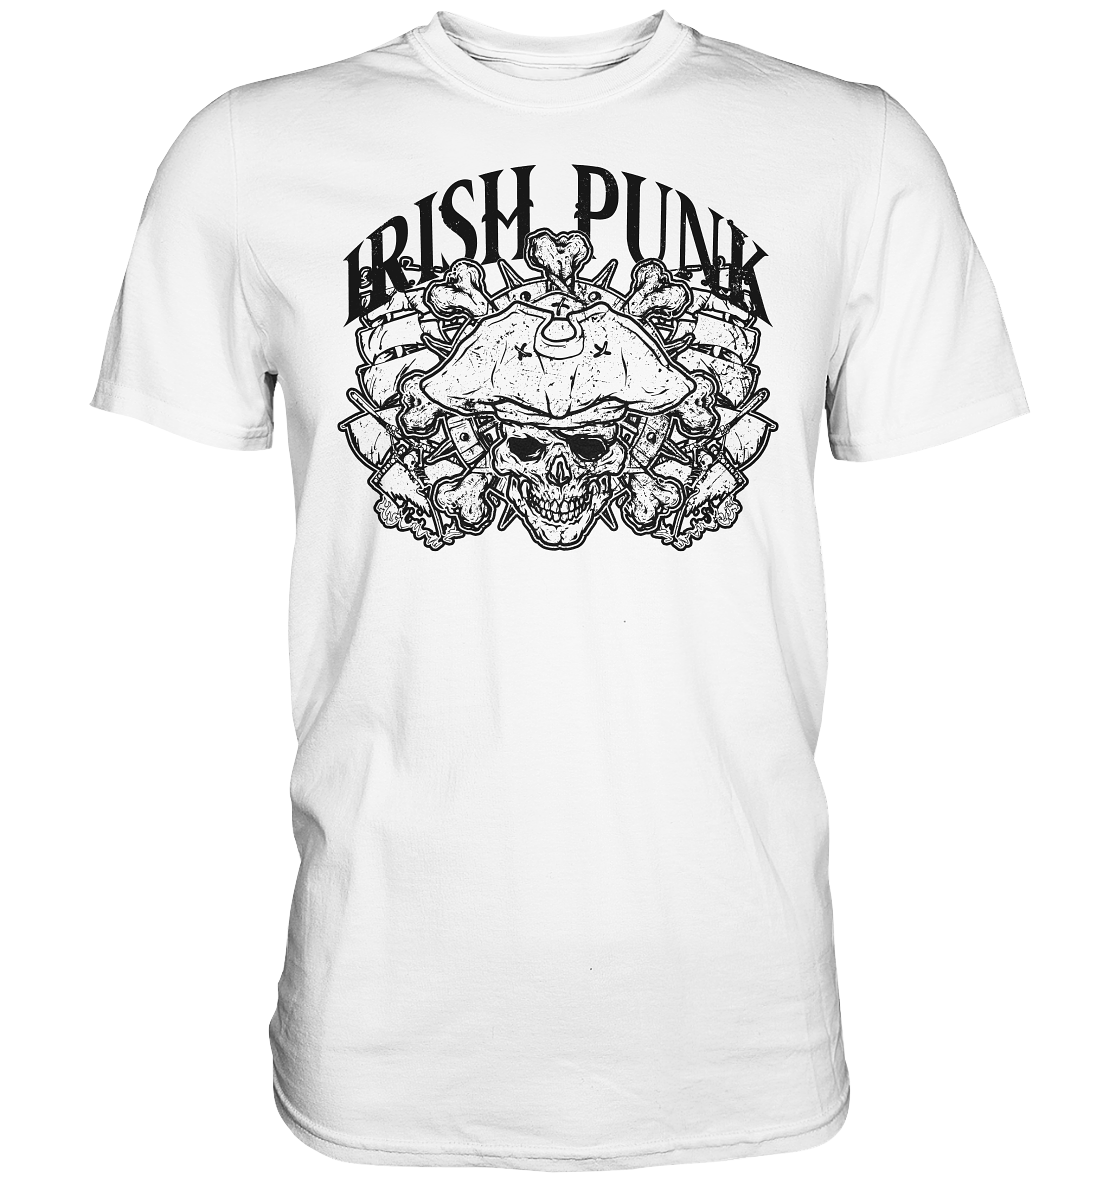 "Irish Punk" - Premium Shirt